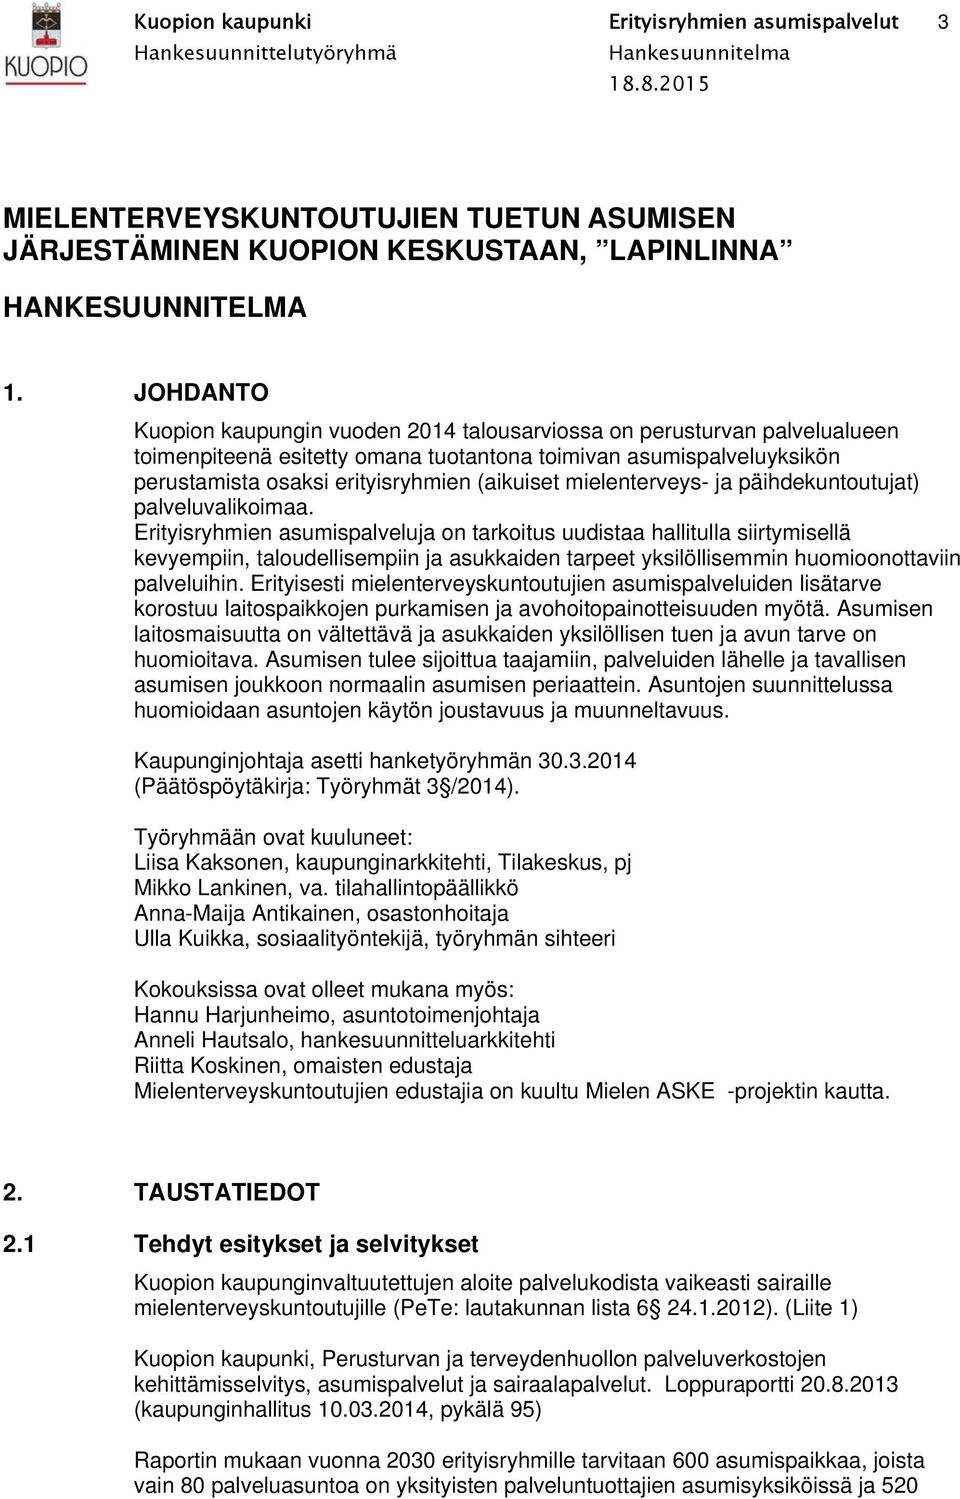 JOHDANTO Kuopion kaupungin vuoden 2014 talousarviossa on perusturvan palvelualueen toimenpiteenä esitetty omana tuotantona toimivan asumispalveluyksikön perustamista osaksi erityisryhmien (aikuiset